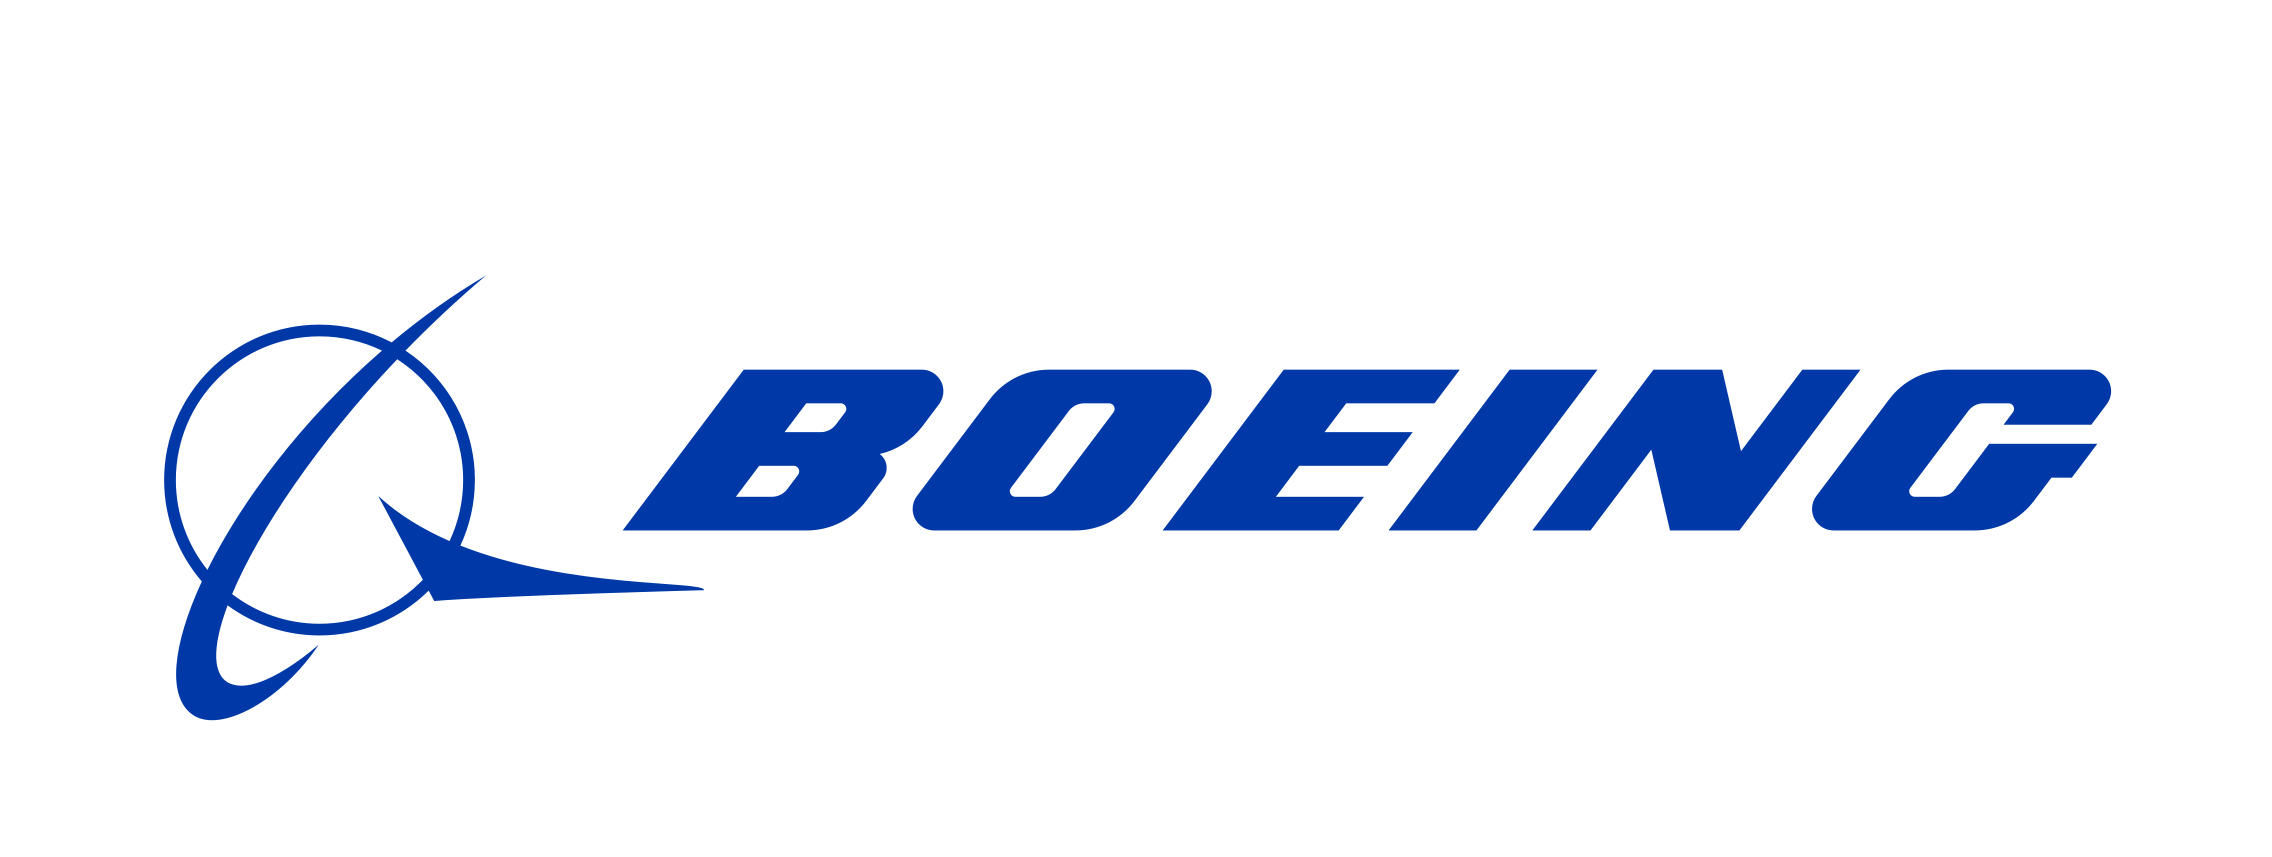 Jeppesen/Boeing